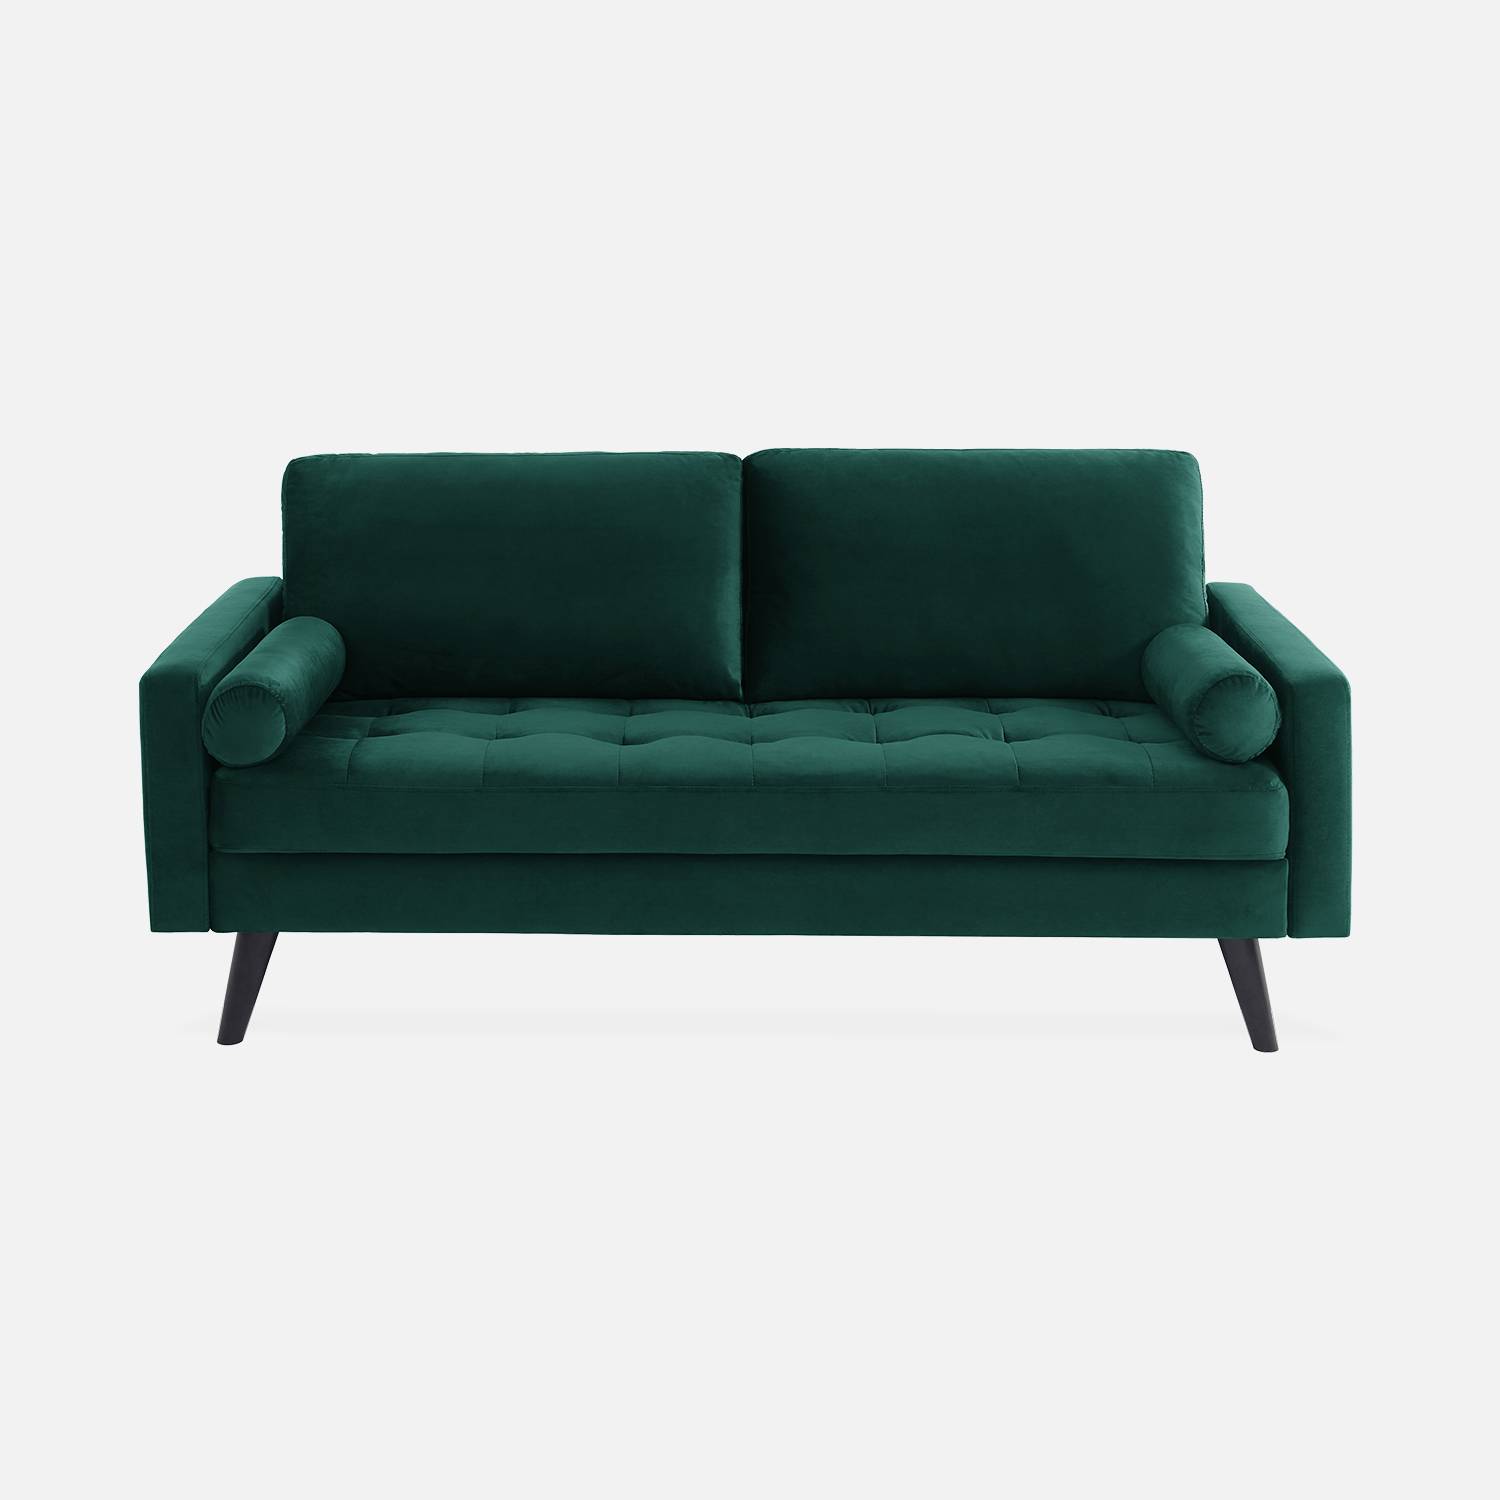 3-sitziges skandinavisches Sofa aus englischem grünem Samt, schwarze Holzbeine Photo3